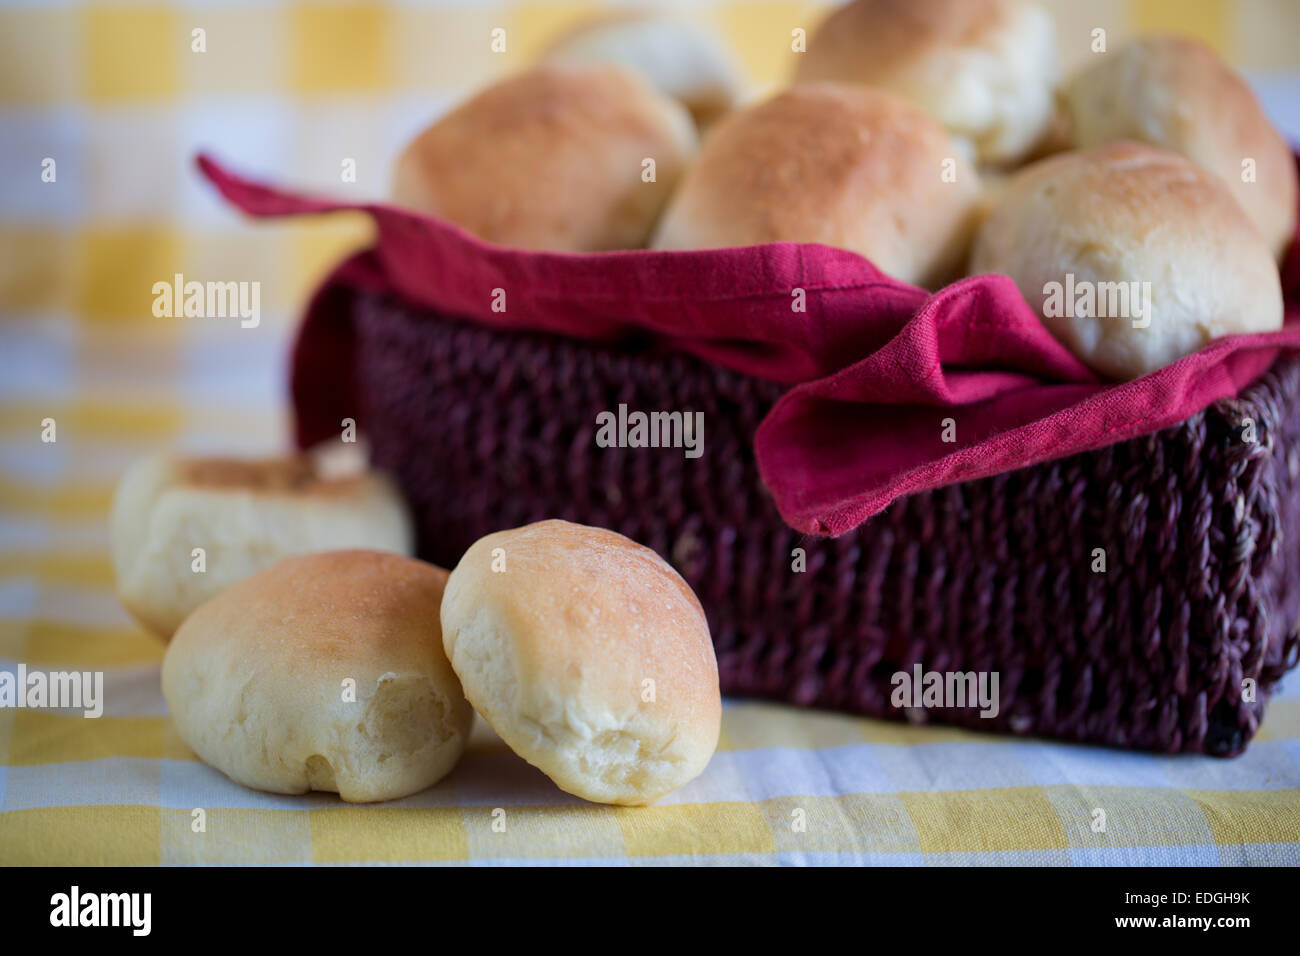 Kleine Brötchen oder Brot serviert in einem hölzernen Korb Stockfoto